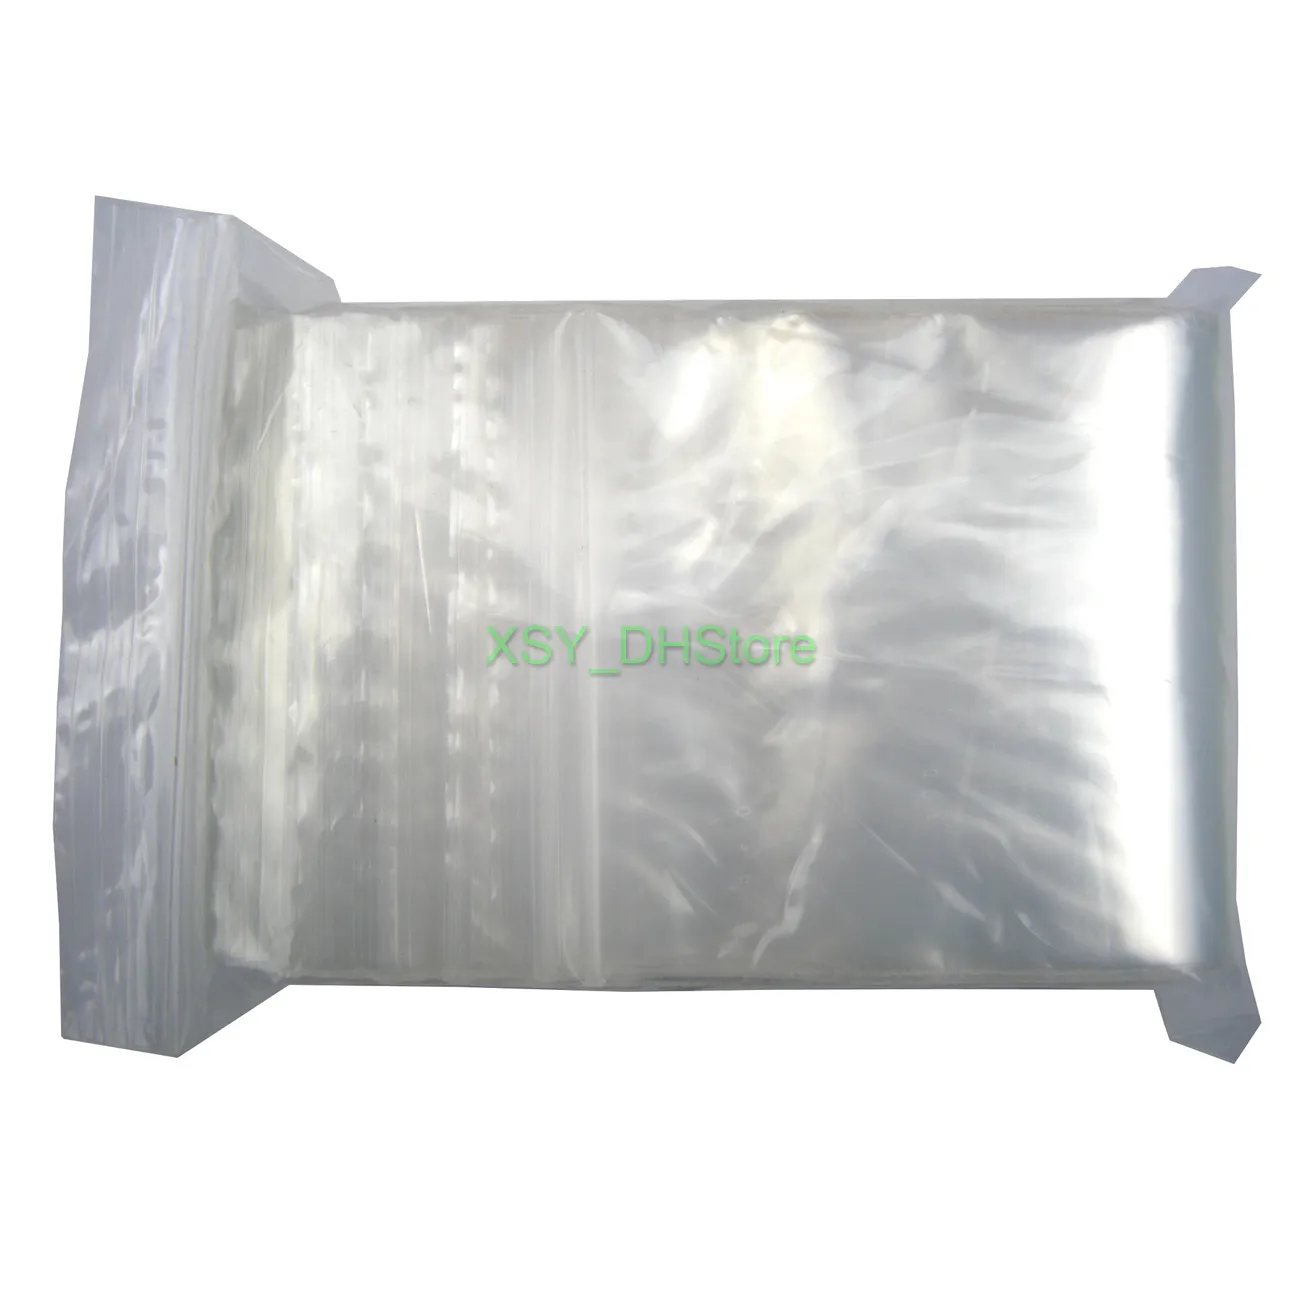 300 bolsas de polietileno transparentes resellables con cremallera, bolsas  de envío de 3 x 4 pulgadas